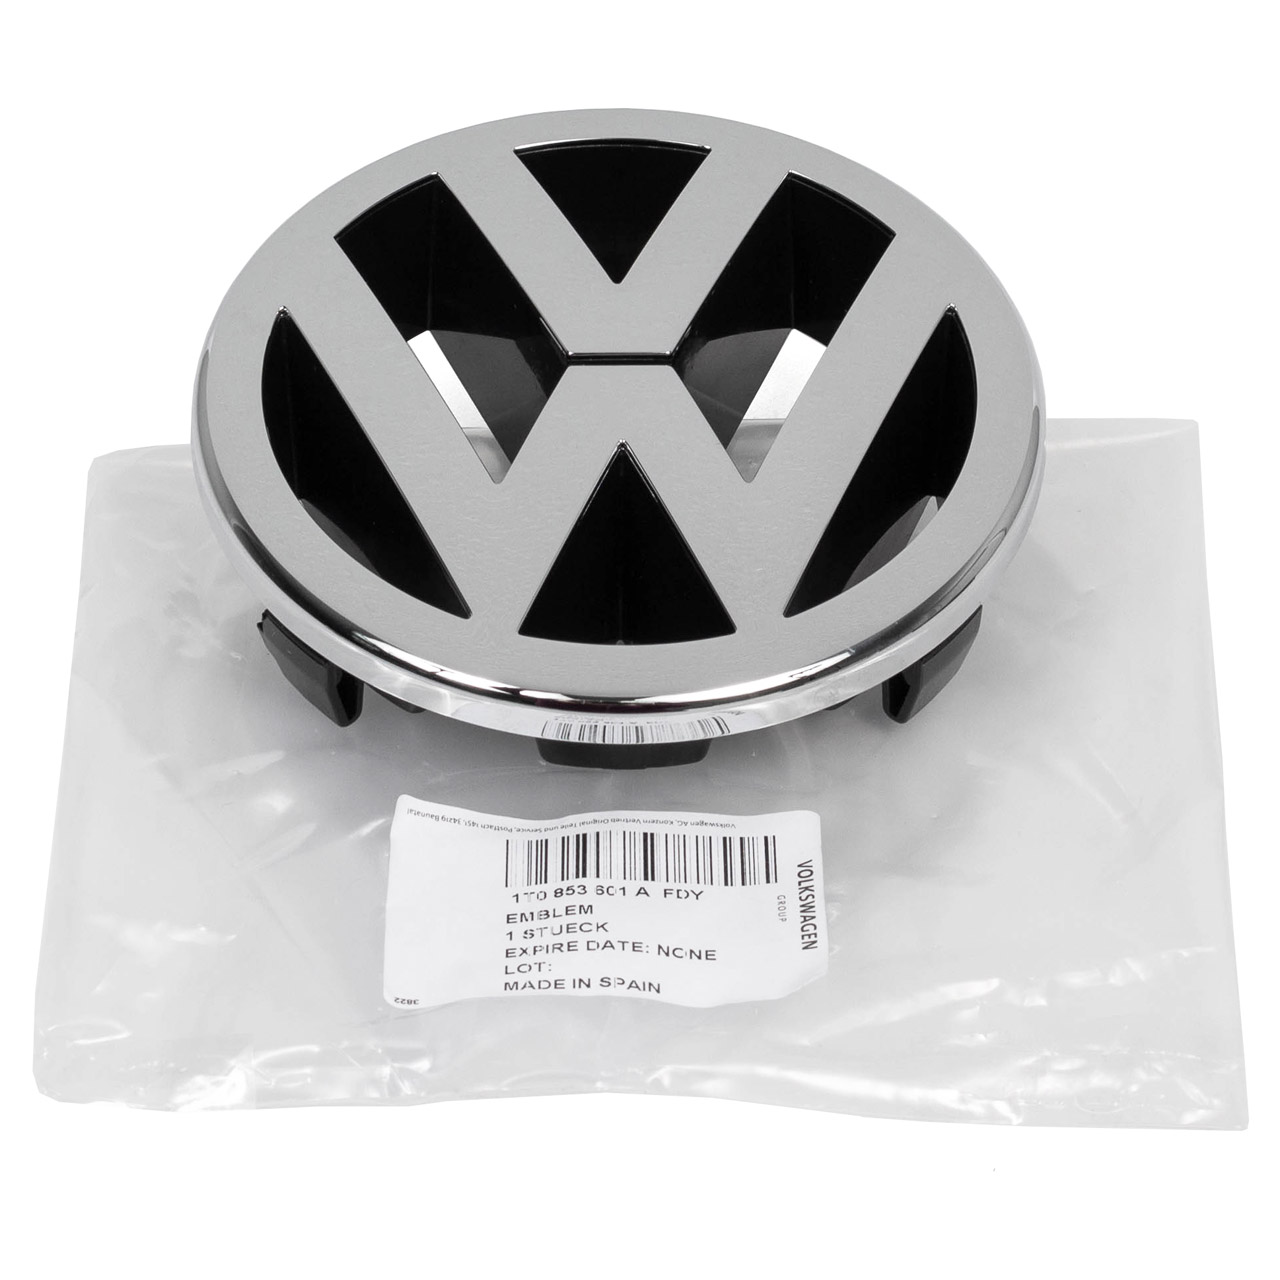 ORIGINAL VW Emblem Kühlergrill Chrom Golf 5 Caddy 3 Touran Polo 9N Jetta 3 1T0853601A FDY